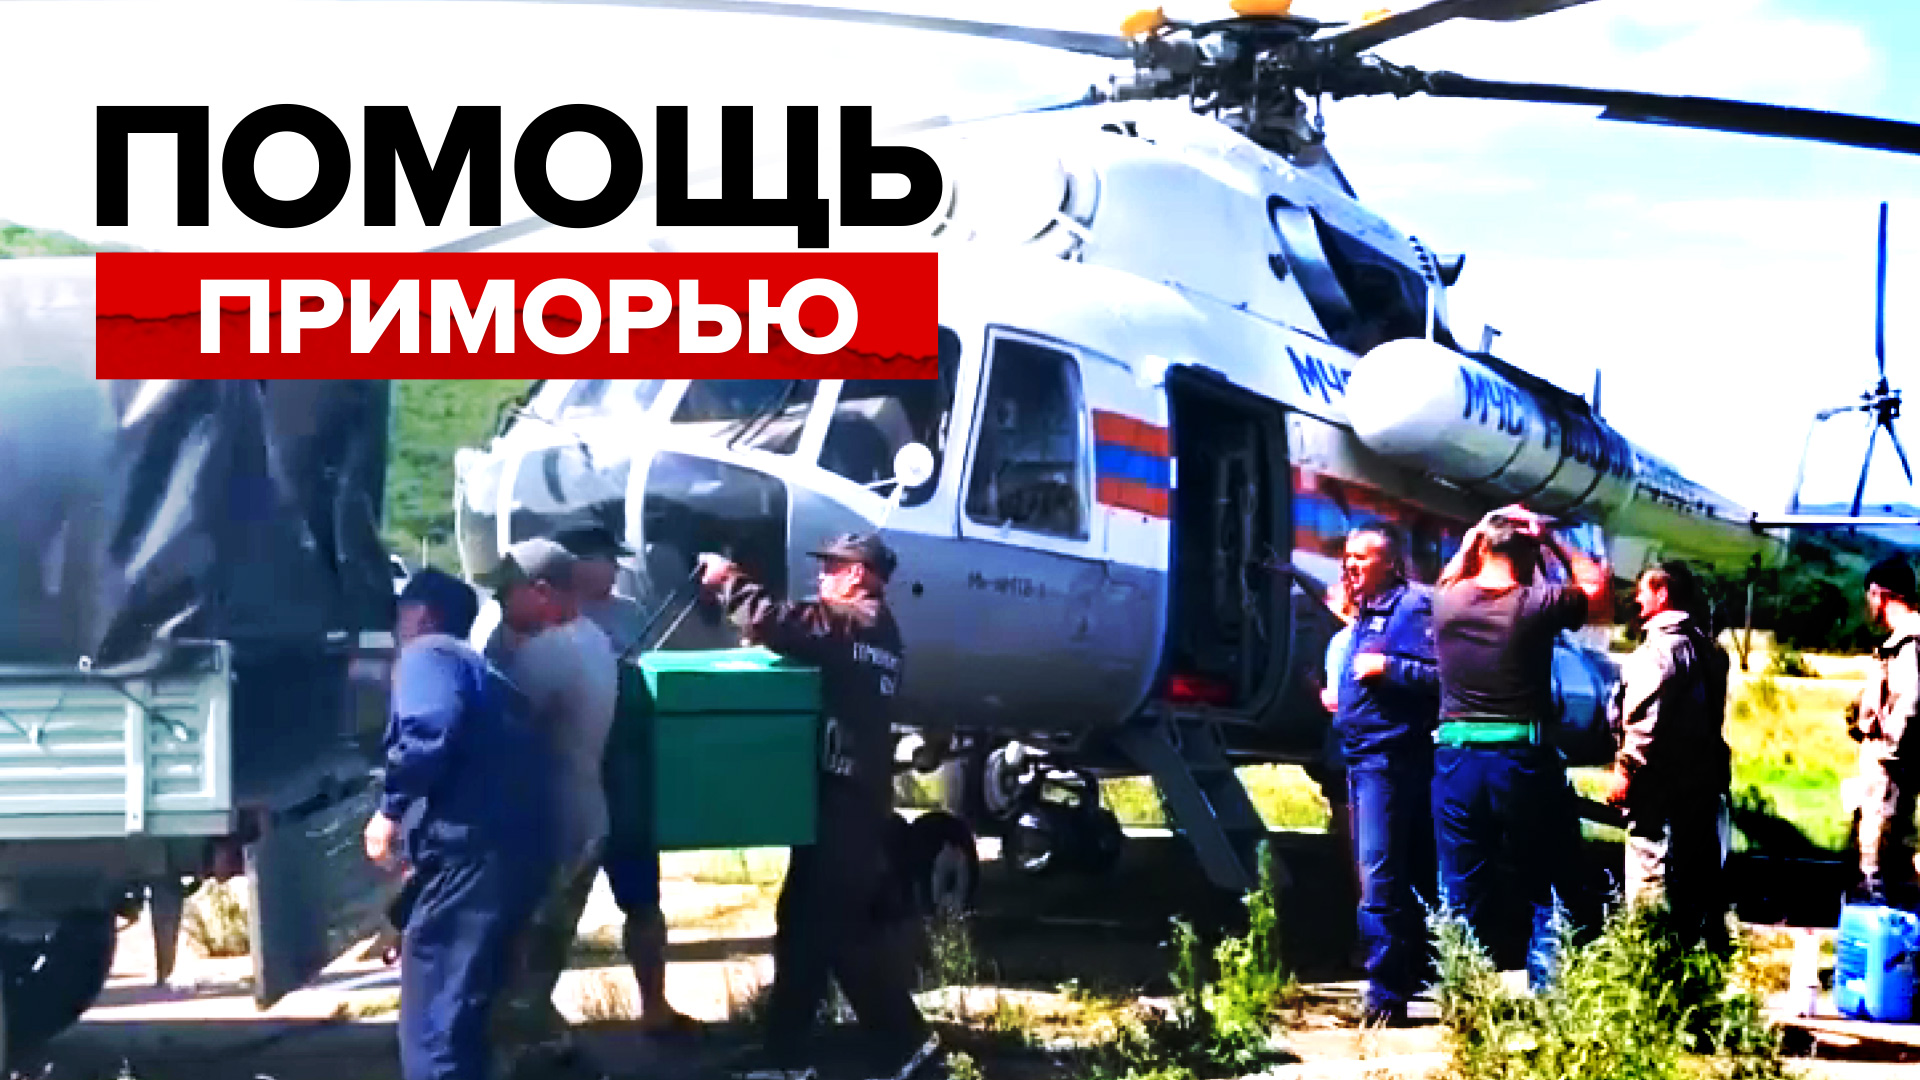 Сотрудники МЧС доставили гуманитарную помощь в Приморье — видео